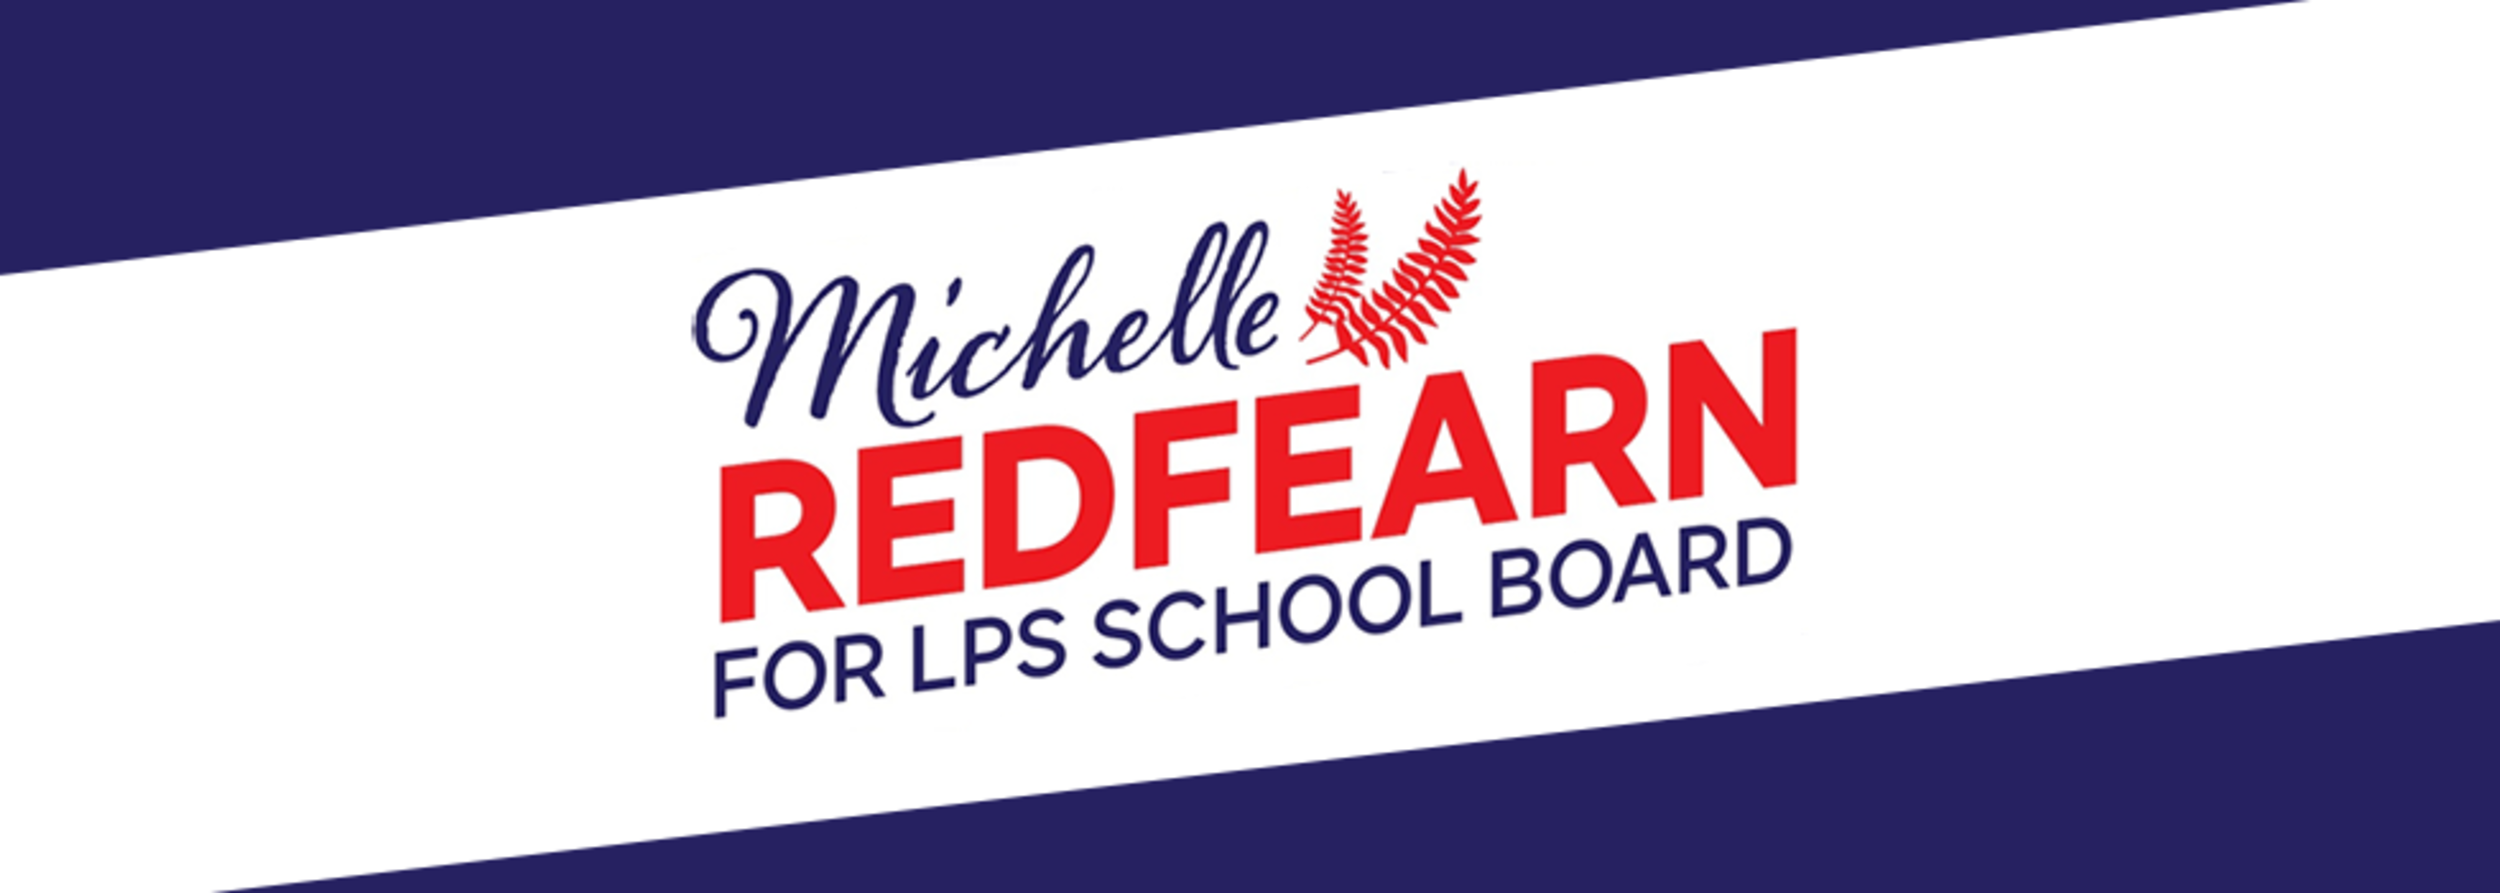 Michelle Redfearn for LPS School Board